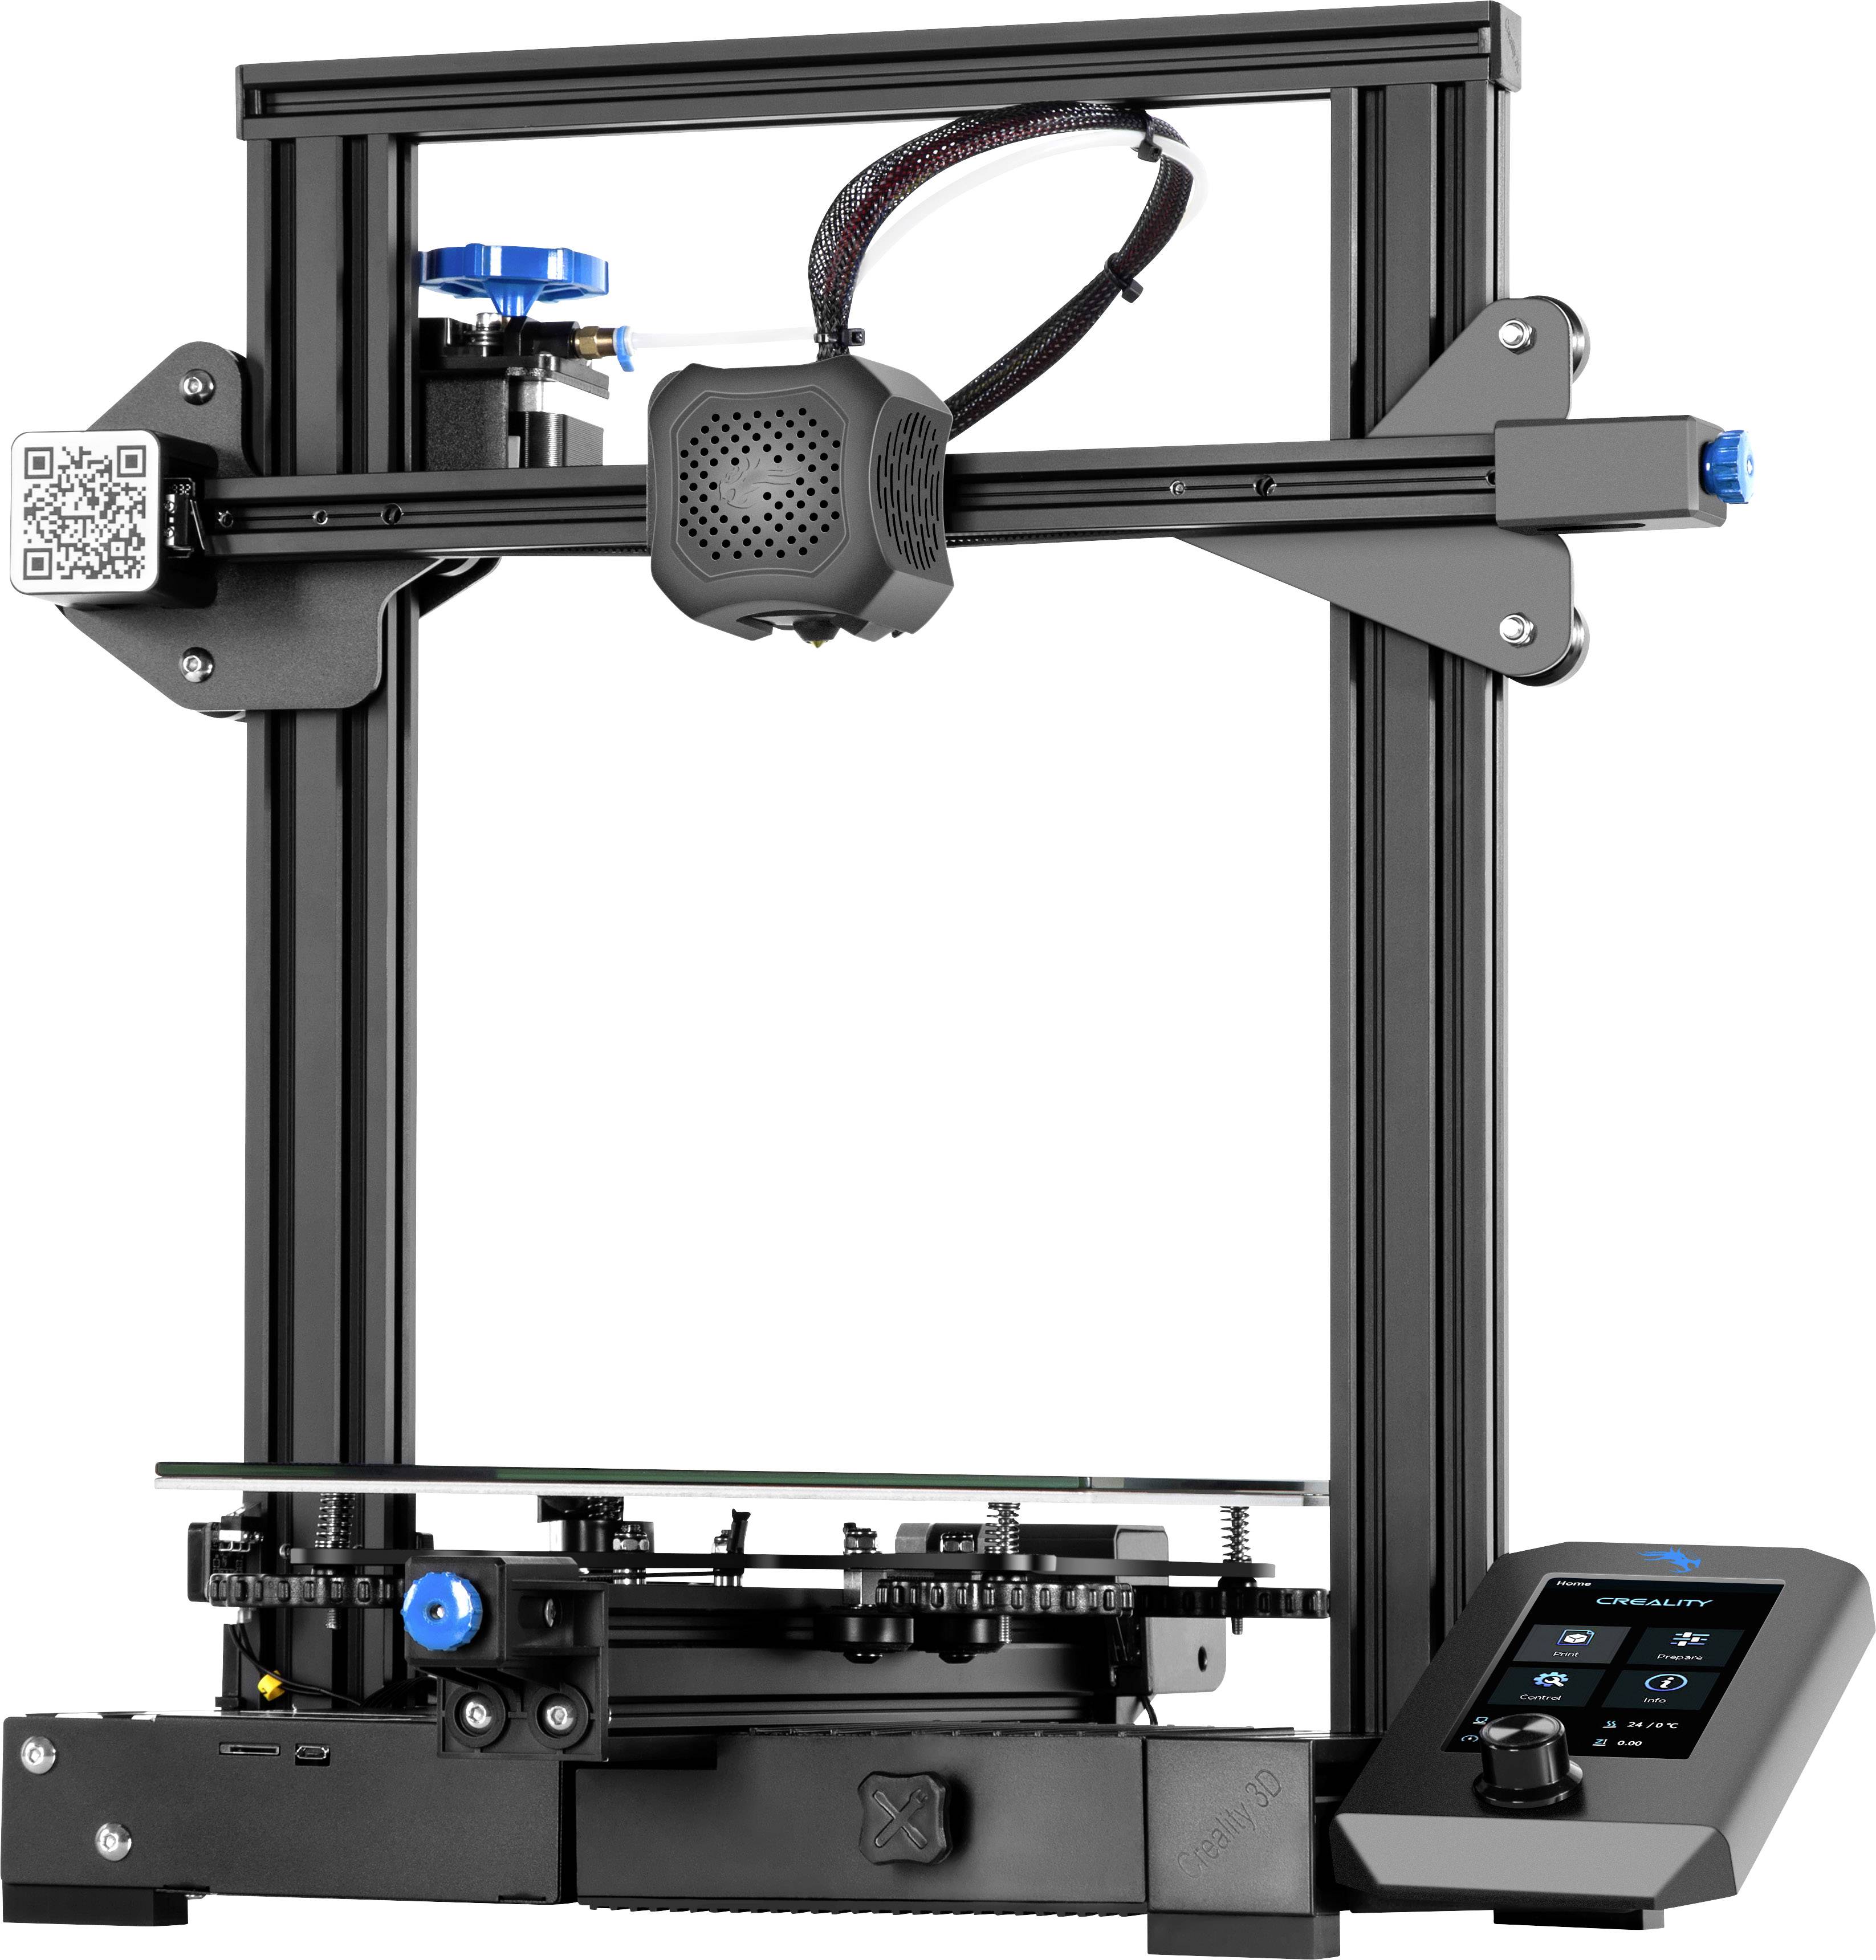 Buy Creality Ender-3 V2 3D printer assembly kit